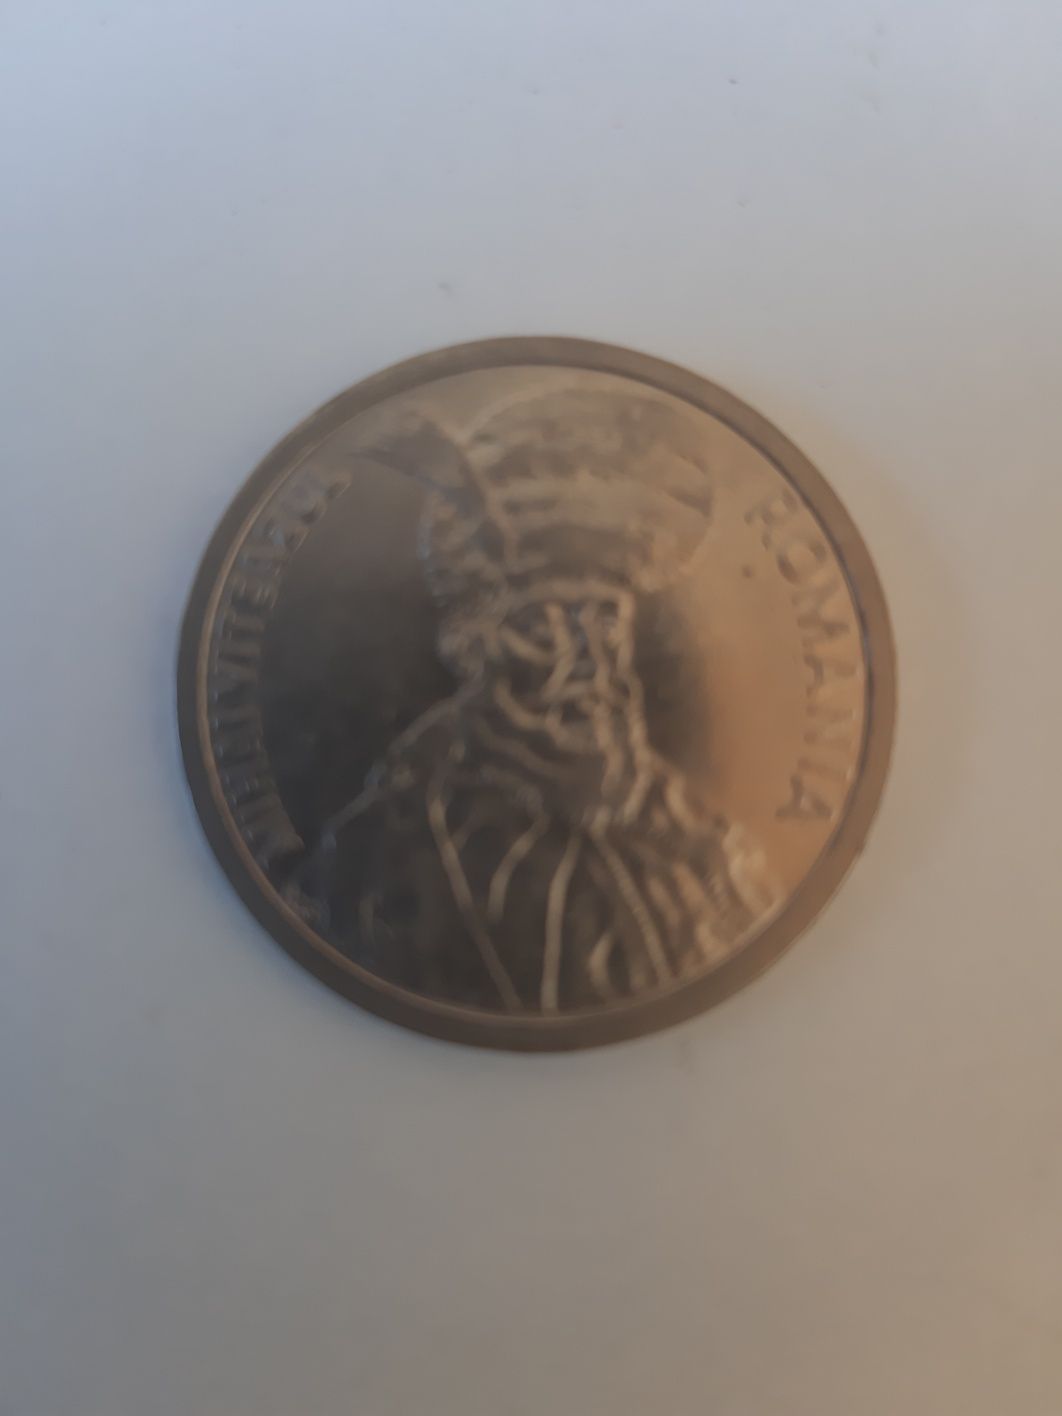 100 de lei moneda din 1994